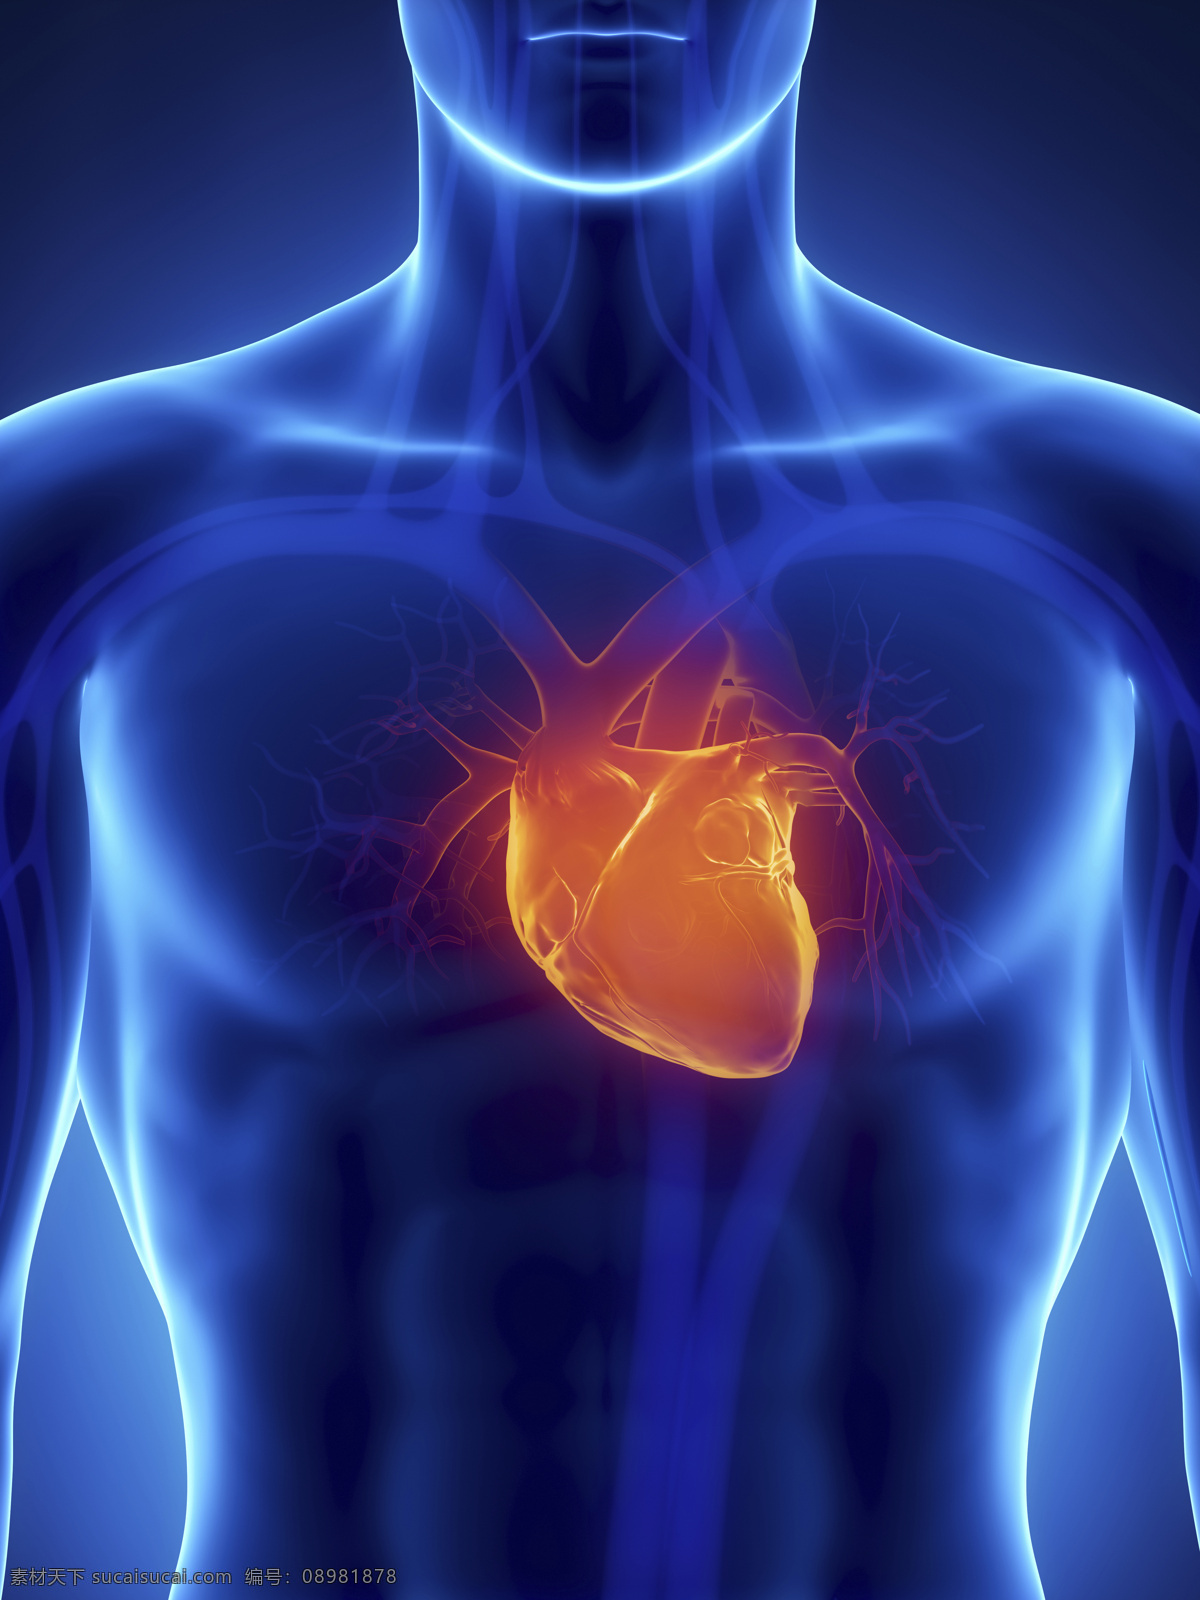 男性 人体 心脏 血管 器官 男性器官 心脏器官 血管器官 人体器官 医疗科学 医学 人体器官图 人物图片